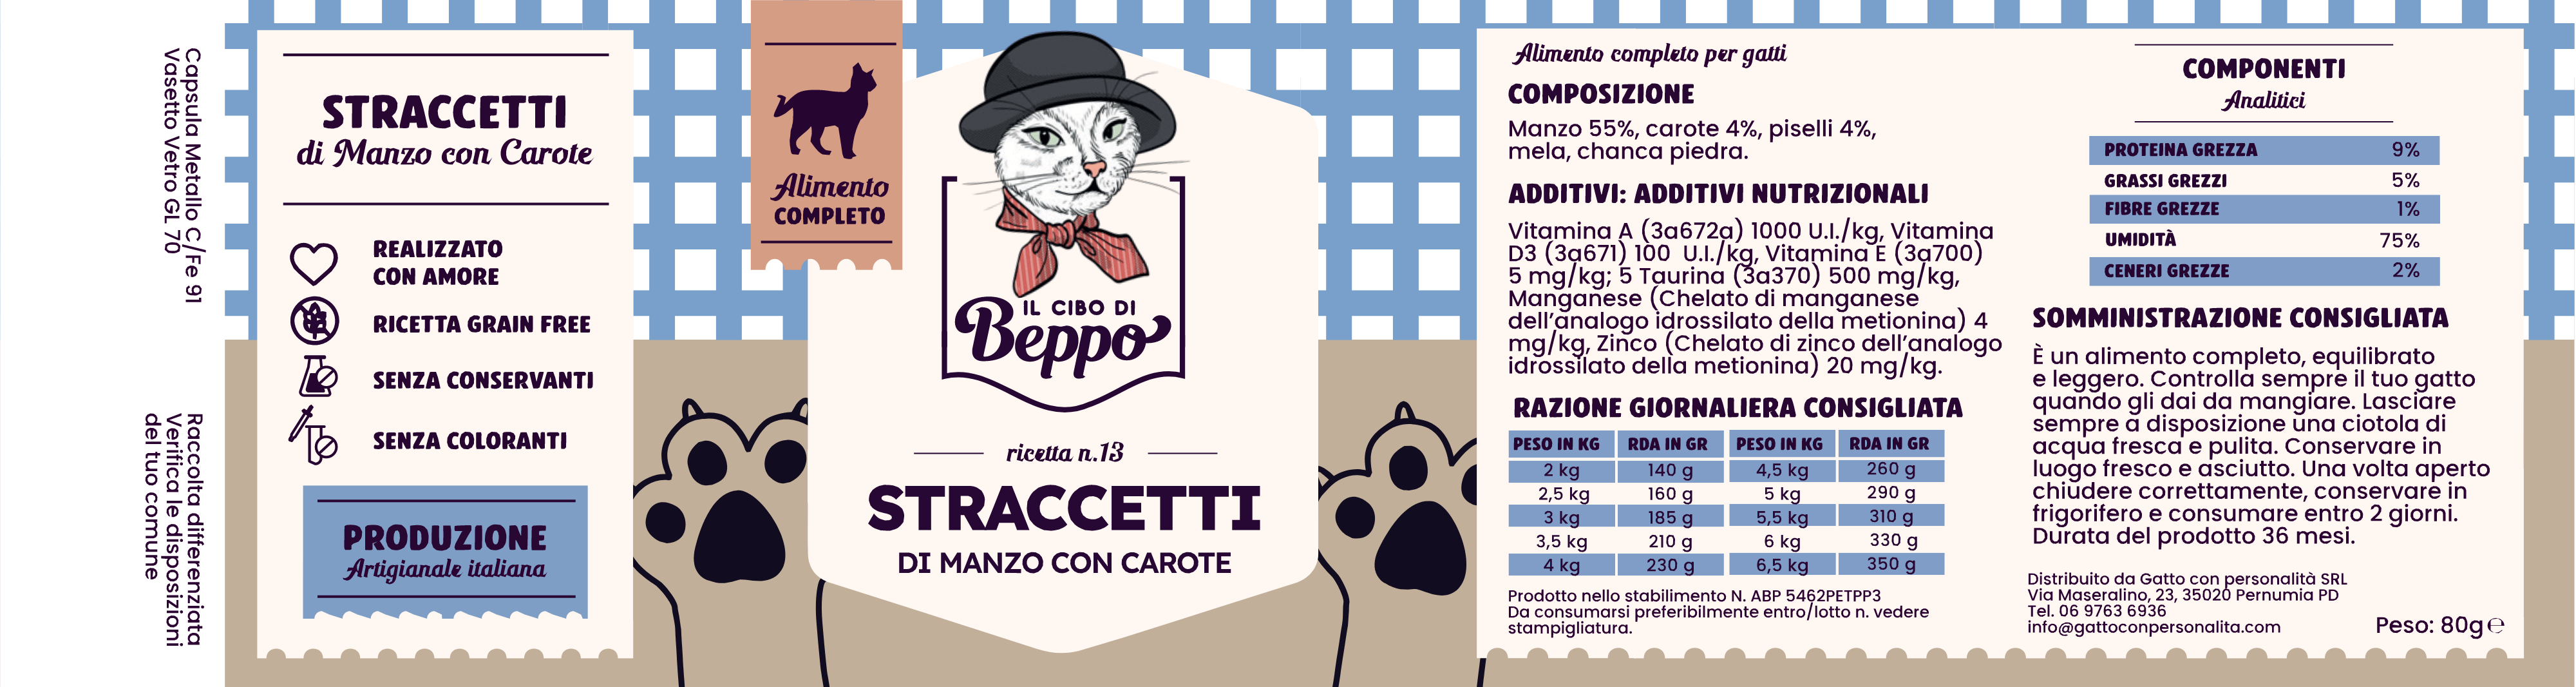 Gatto Con Personalità Il Cibo di Beppo - Straccetti in Vasocottura (alimento completo) - 80g